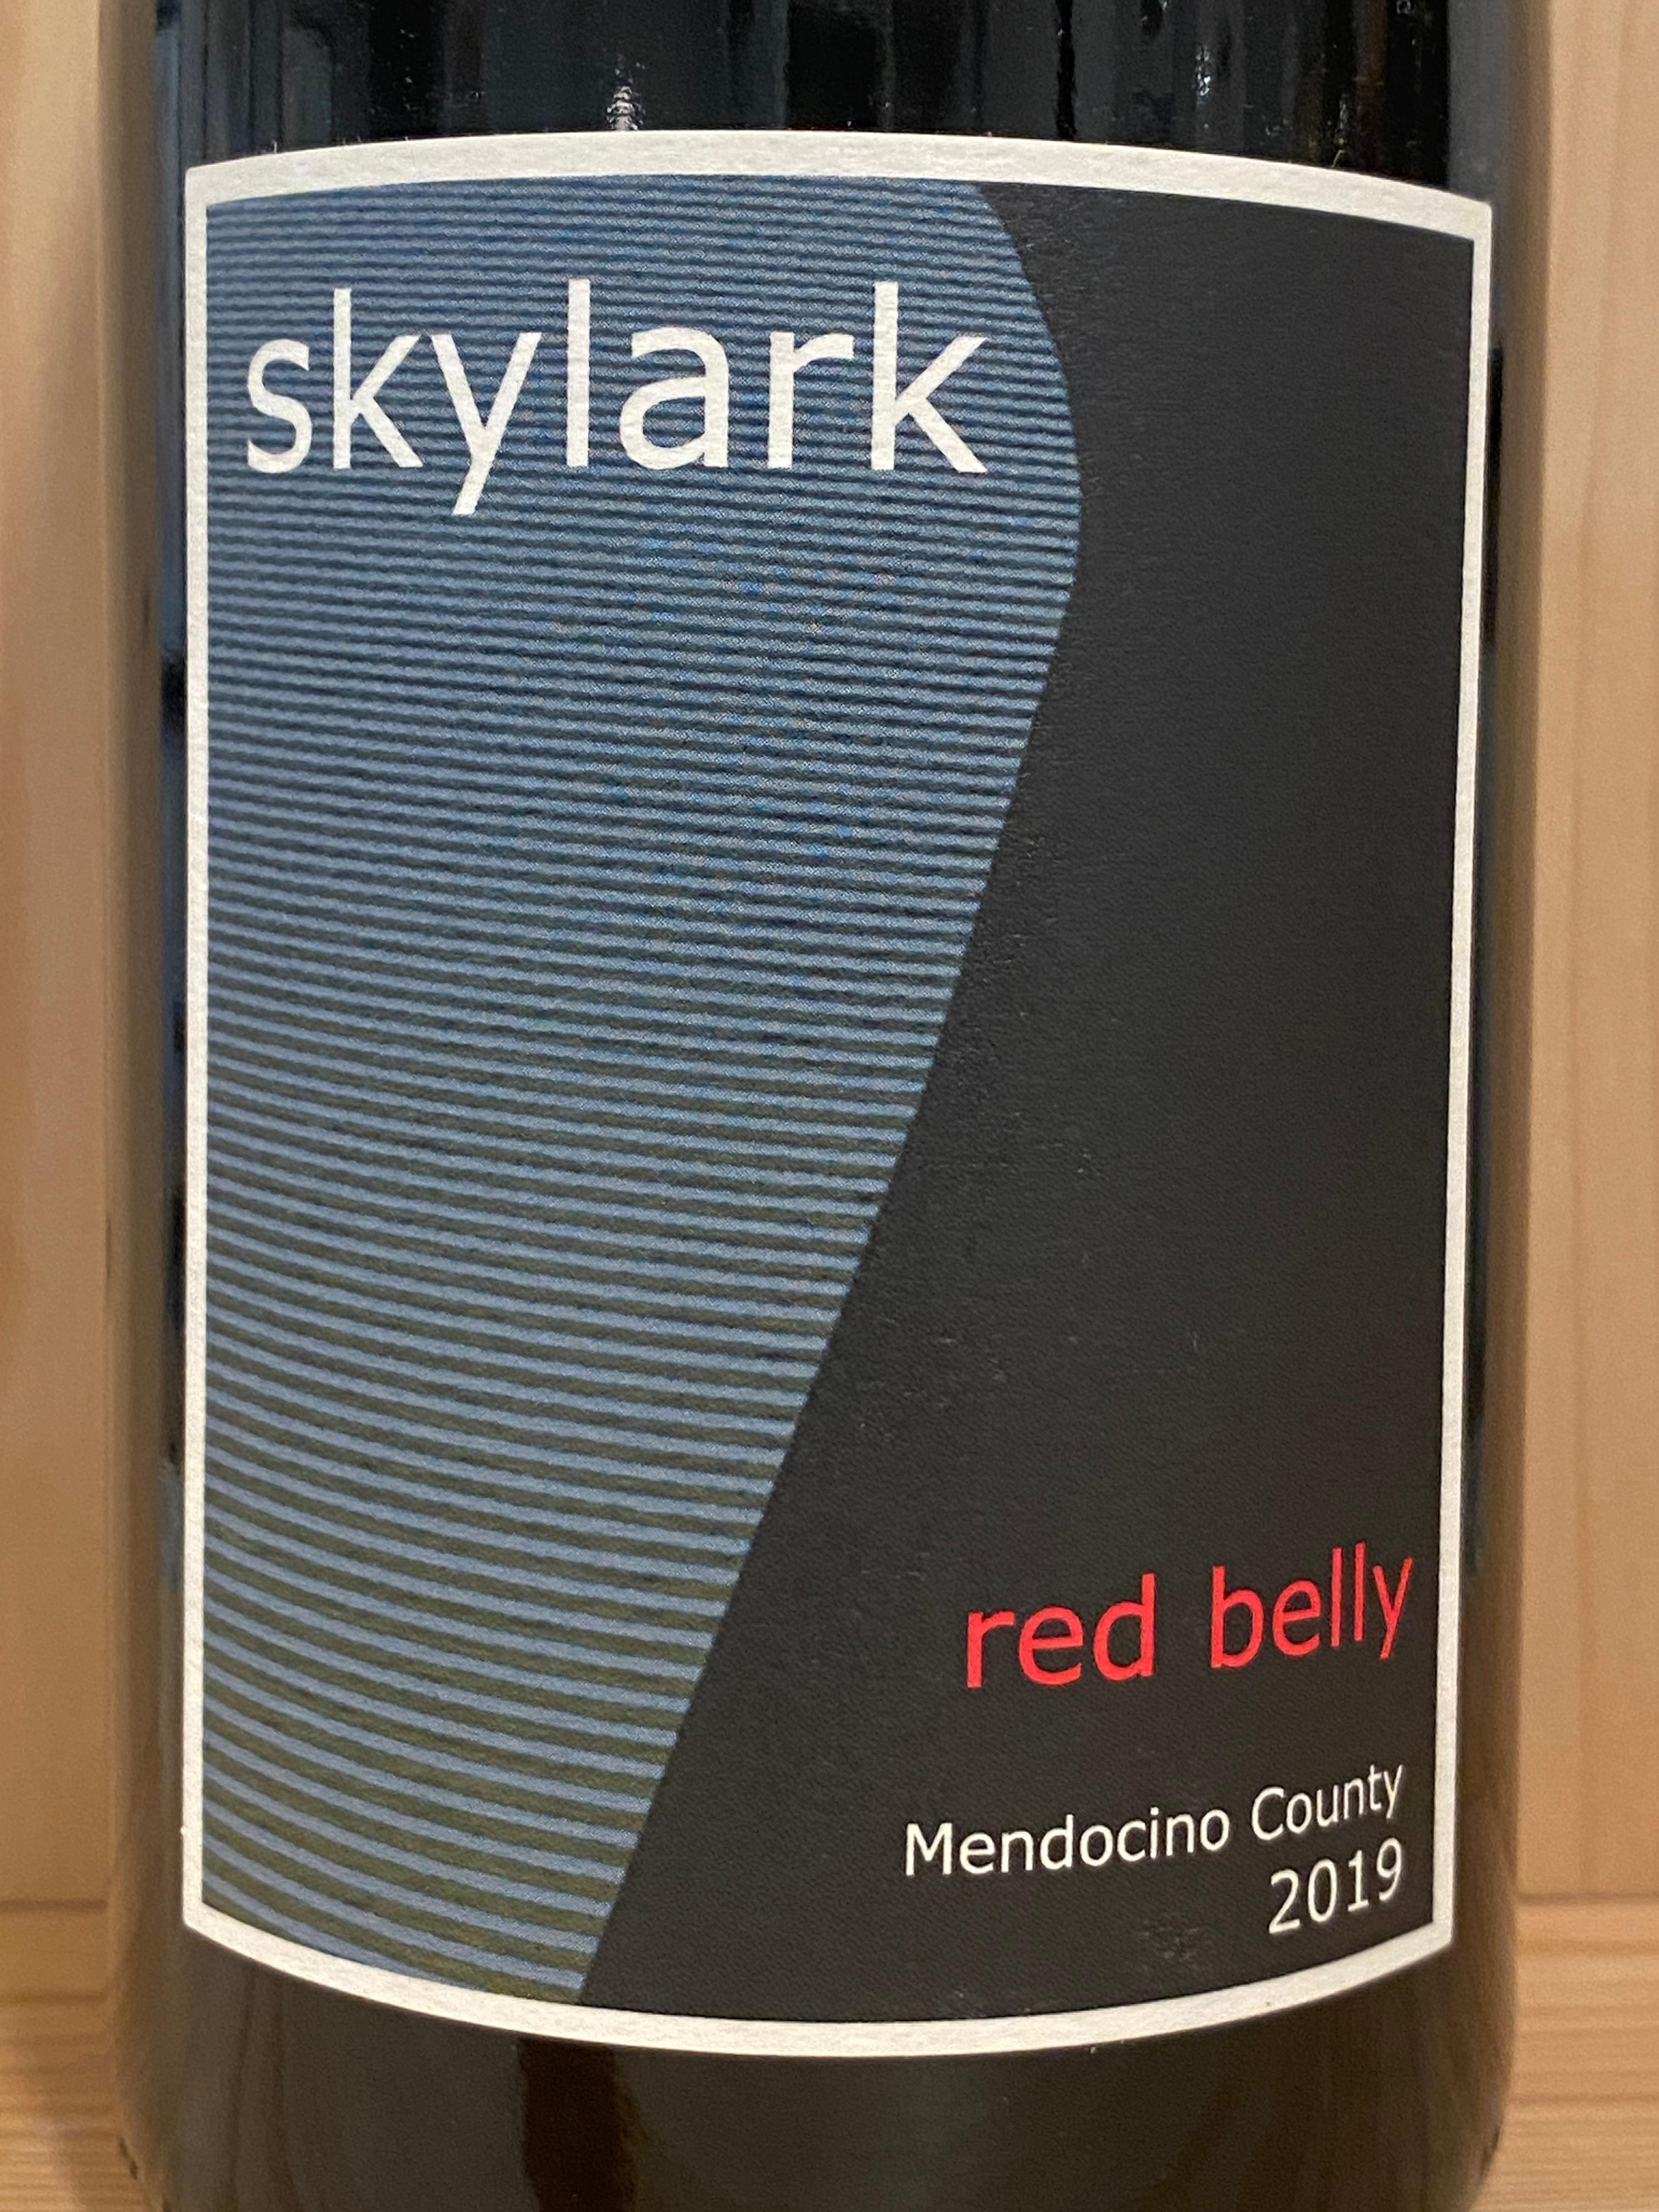 Skylark "Red Belly" 2019: Mendocino, California